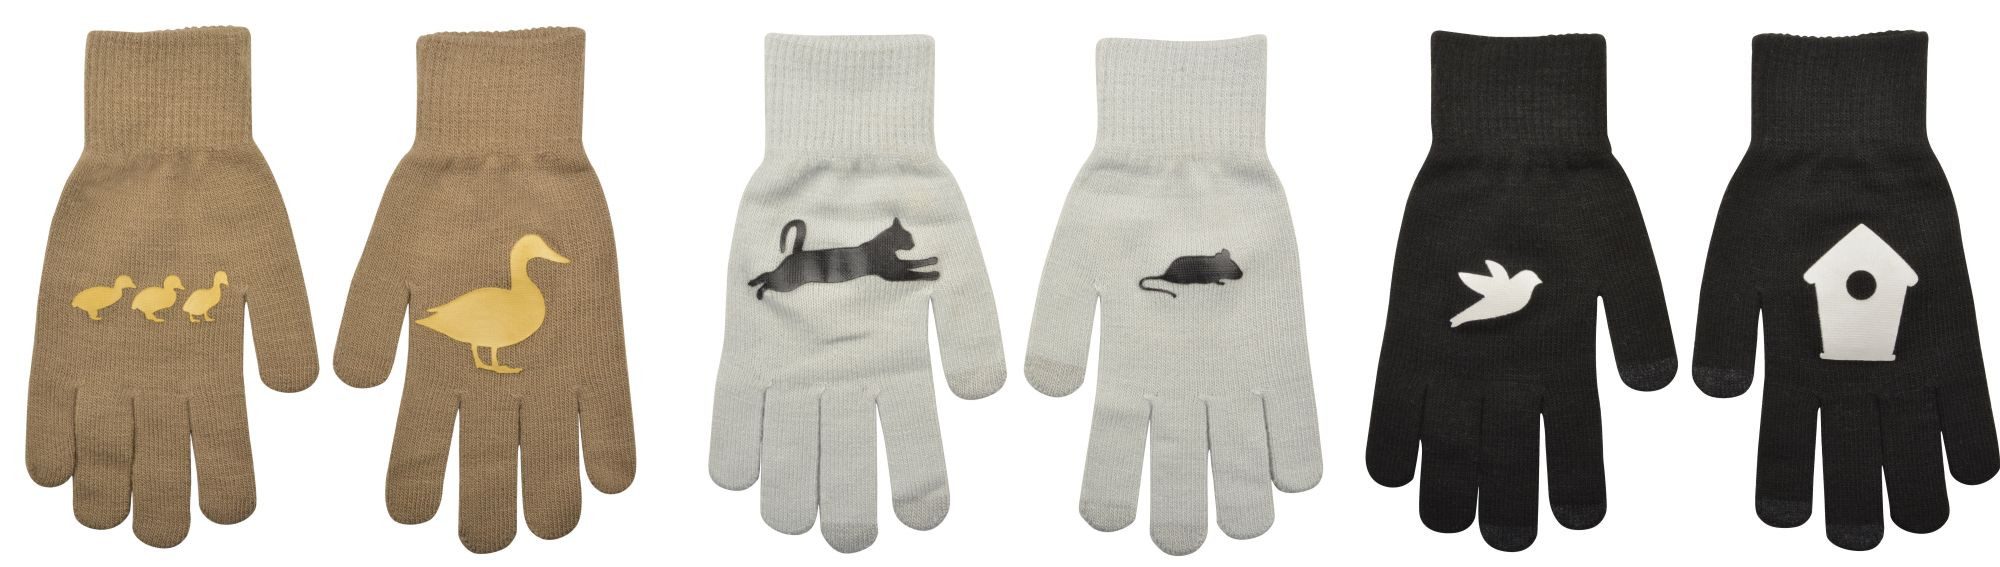 esschert design Gartenhandschuhe Handschuhe anschließendes Muster, mit Bund